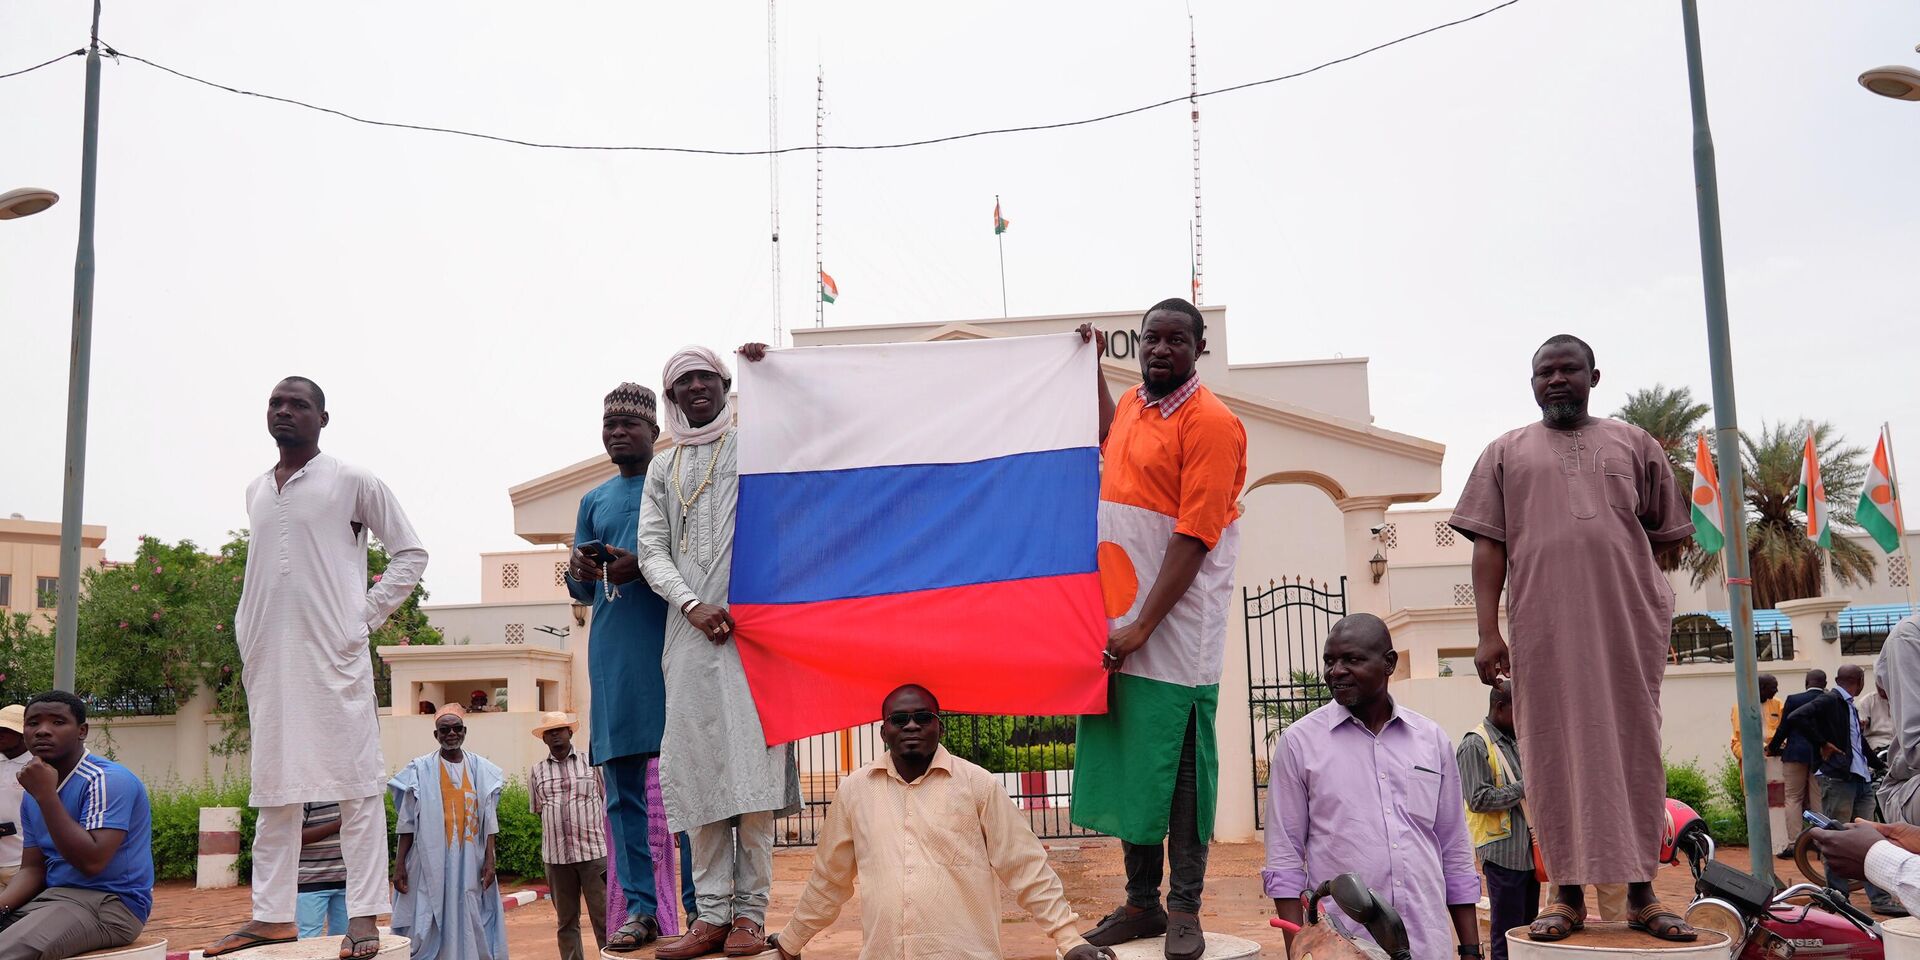 Участники демонстрации в Ниамее, Нигер. 27 июля 2023 года - ИноСМИ, 1920, 02.08.2023